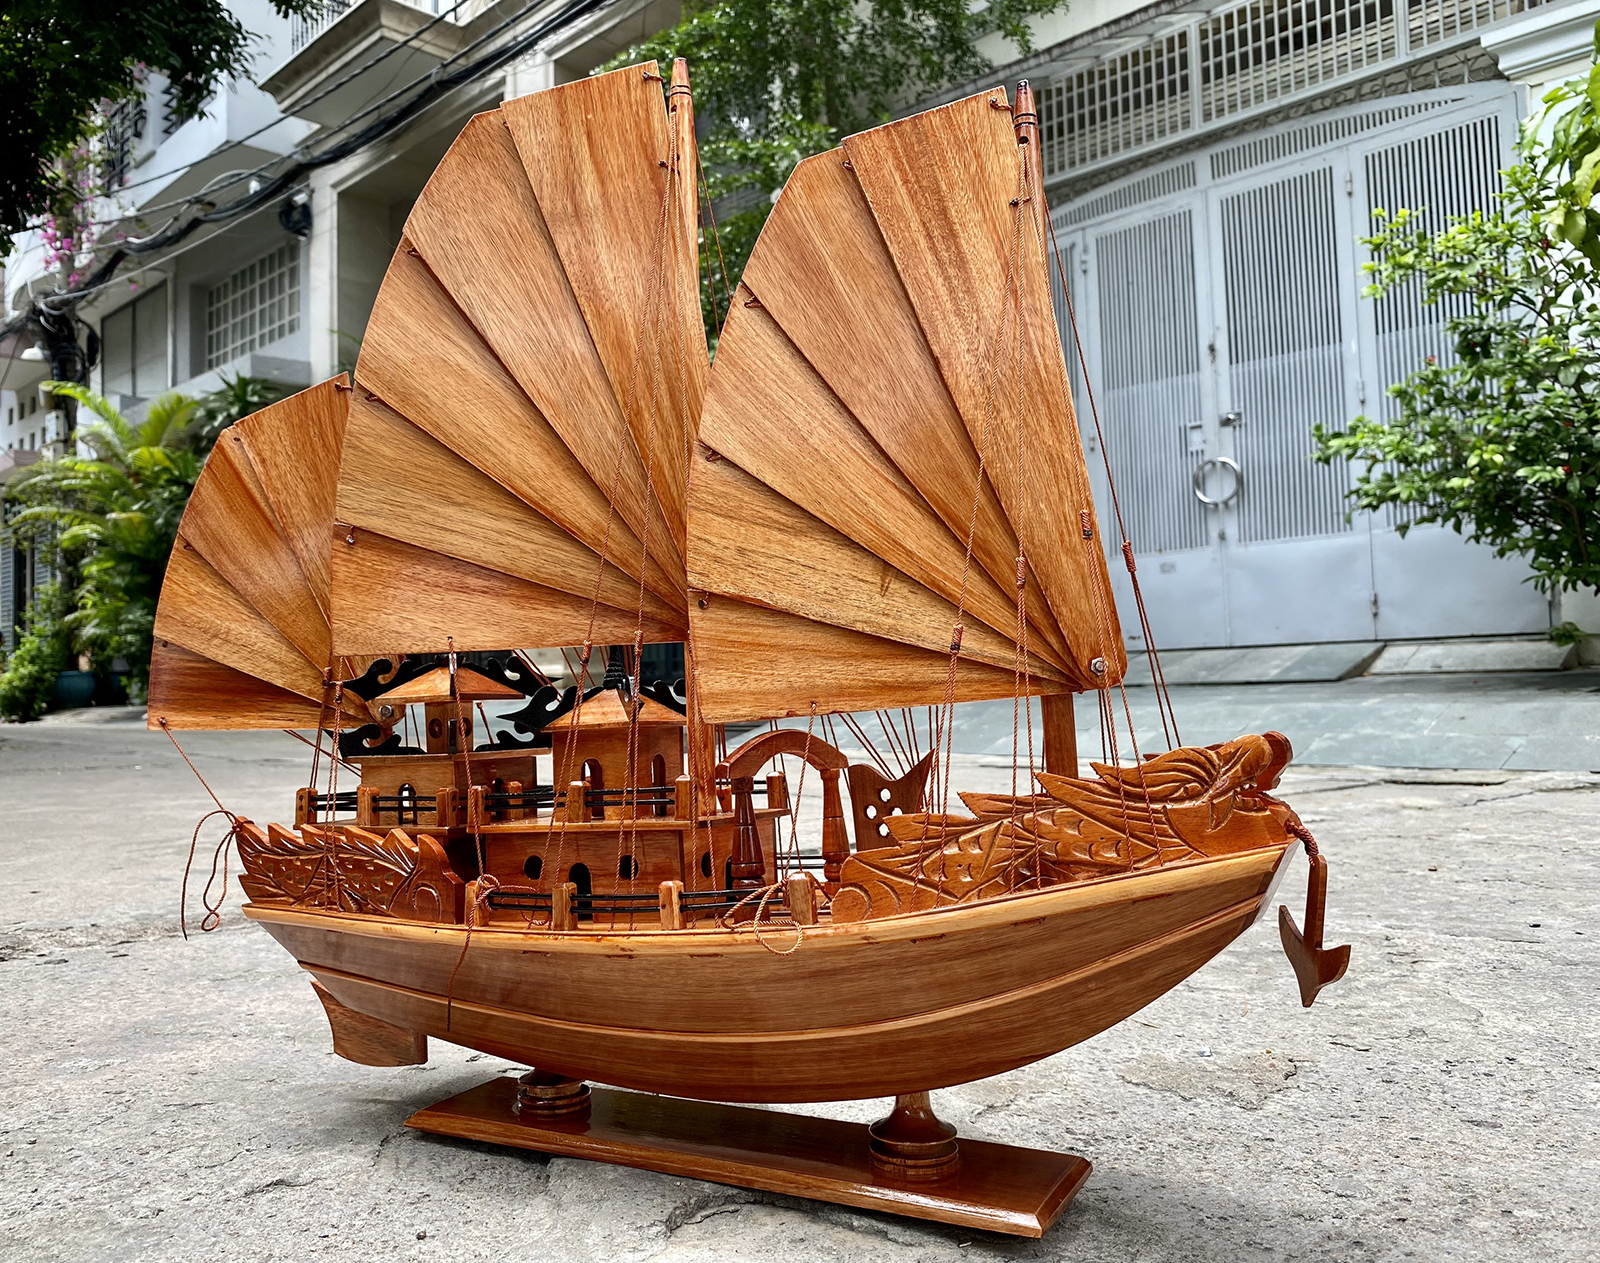 Mô hình thuyền gỗ phong thủy Rồng Hạ Long 60cm, thuyền buồm Việt Nam trang trí gỗ tự nhiên, quà tặng đối tác nước ngoài